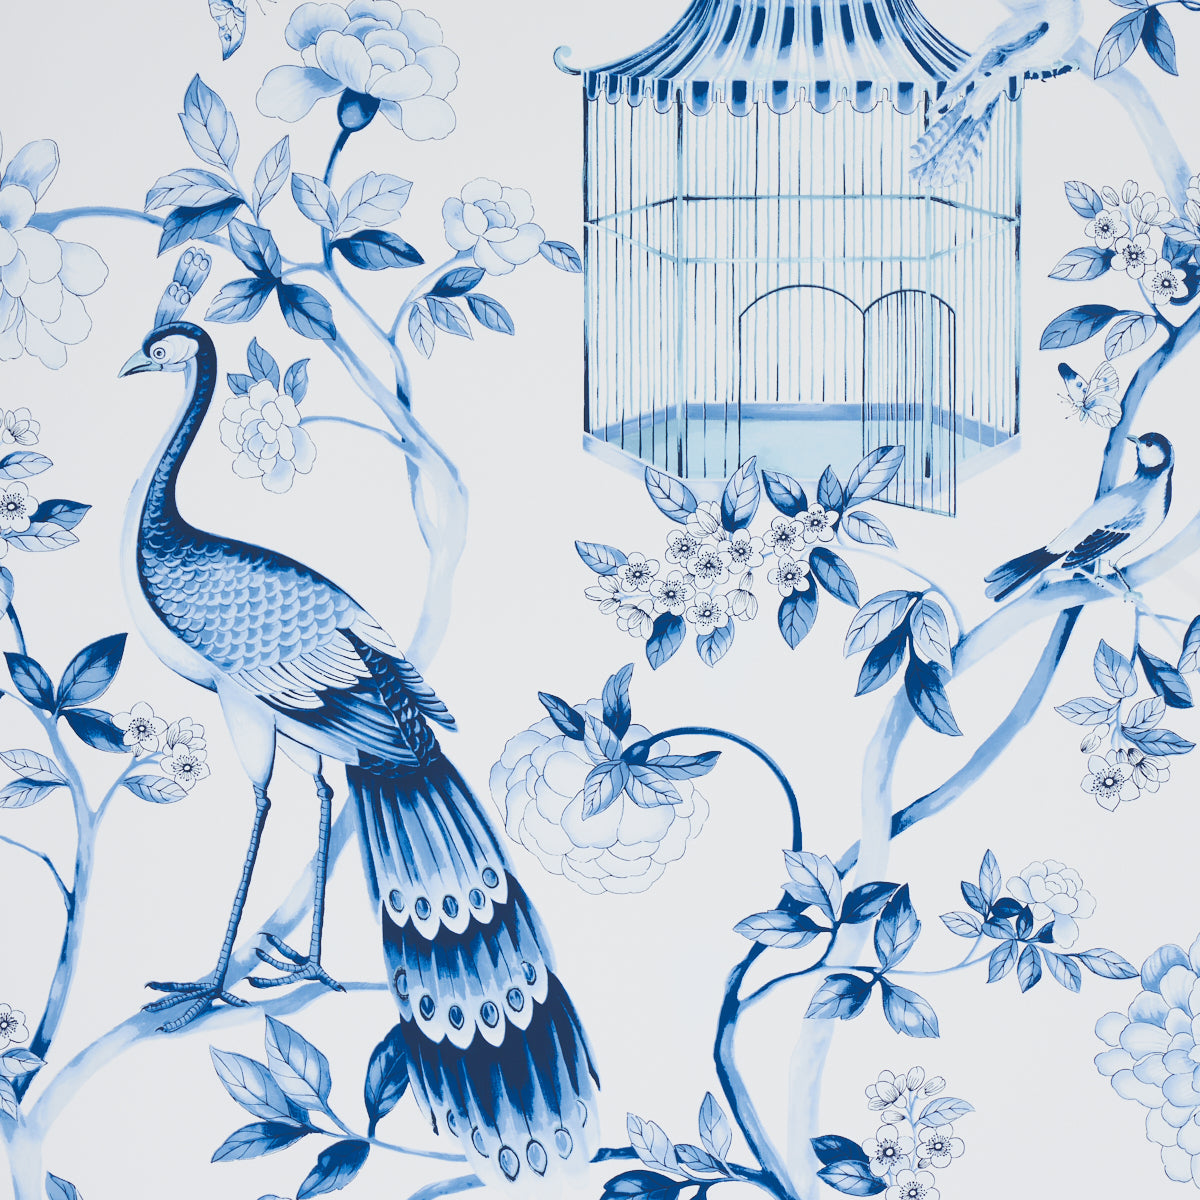 Search 5004081 Oiseaux Et Fleurs Porcelain by Schumacher Wallpaper